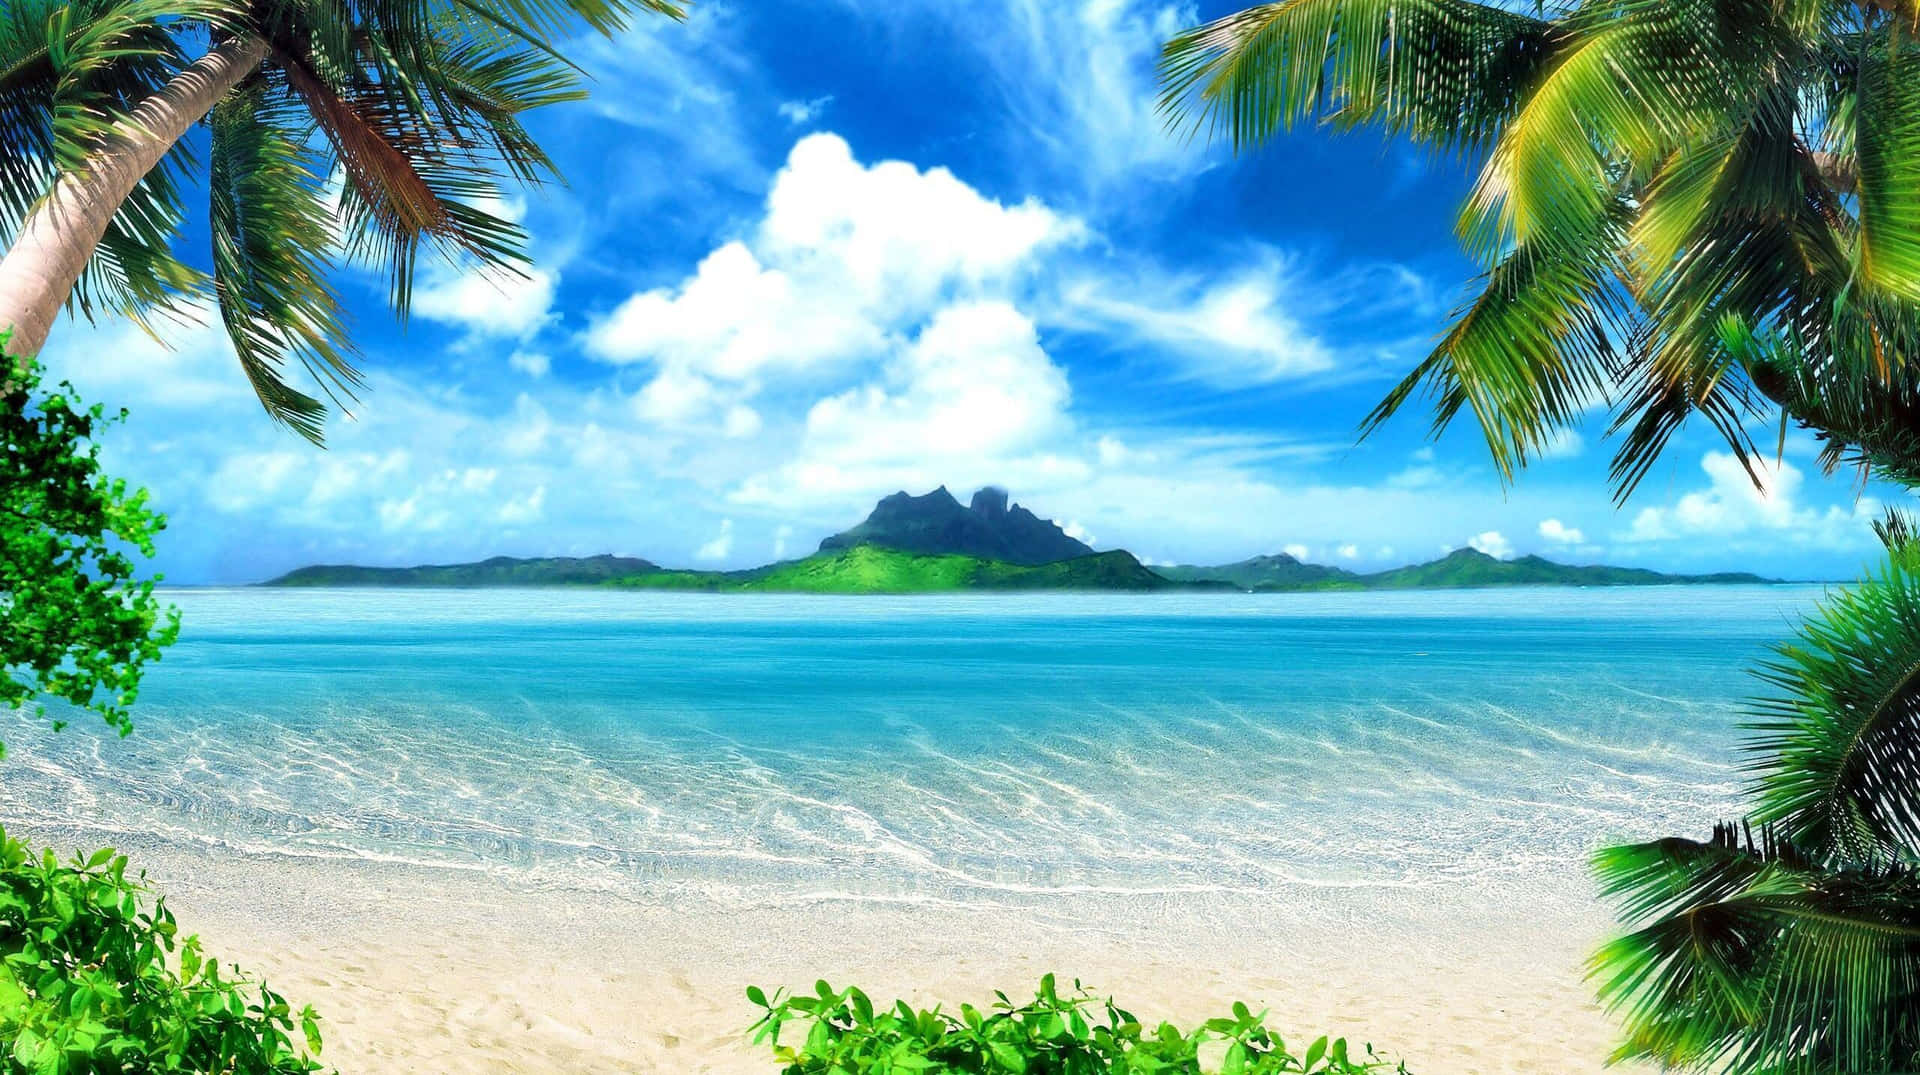 Machensie Eine Pause Von Allem Und Entspannen Sie Sich Auf Der Wunderschönen Insel.